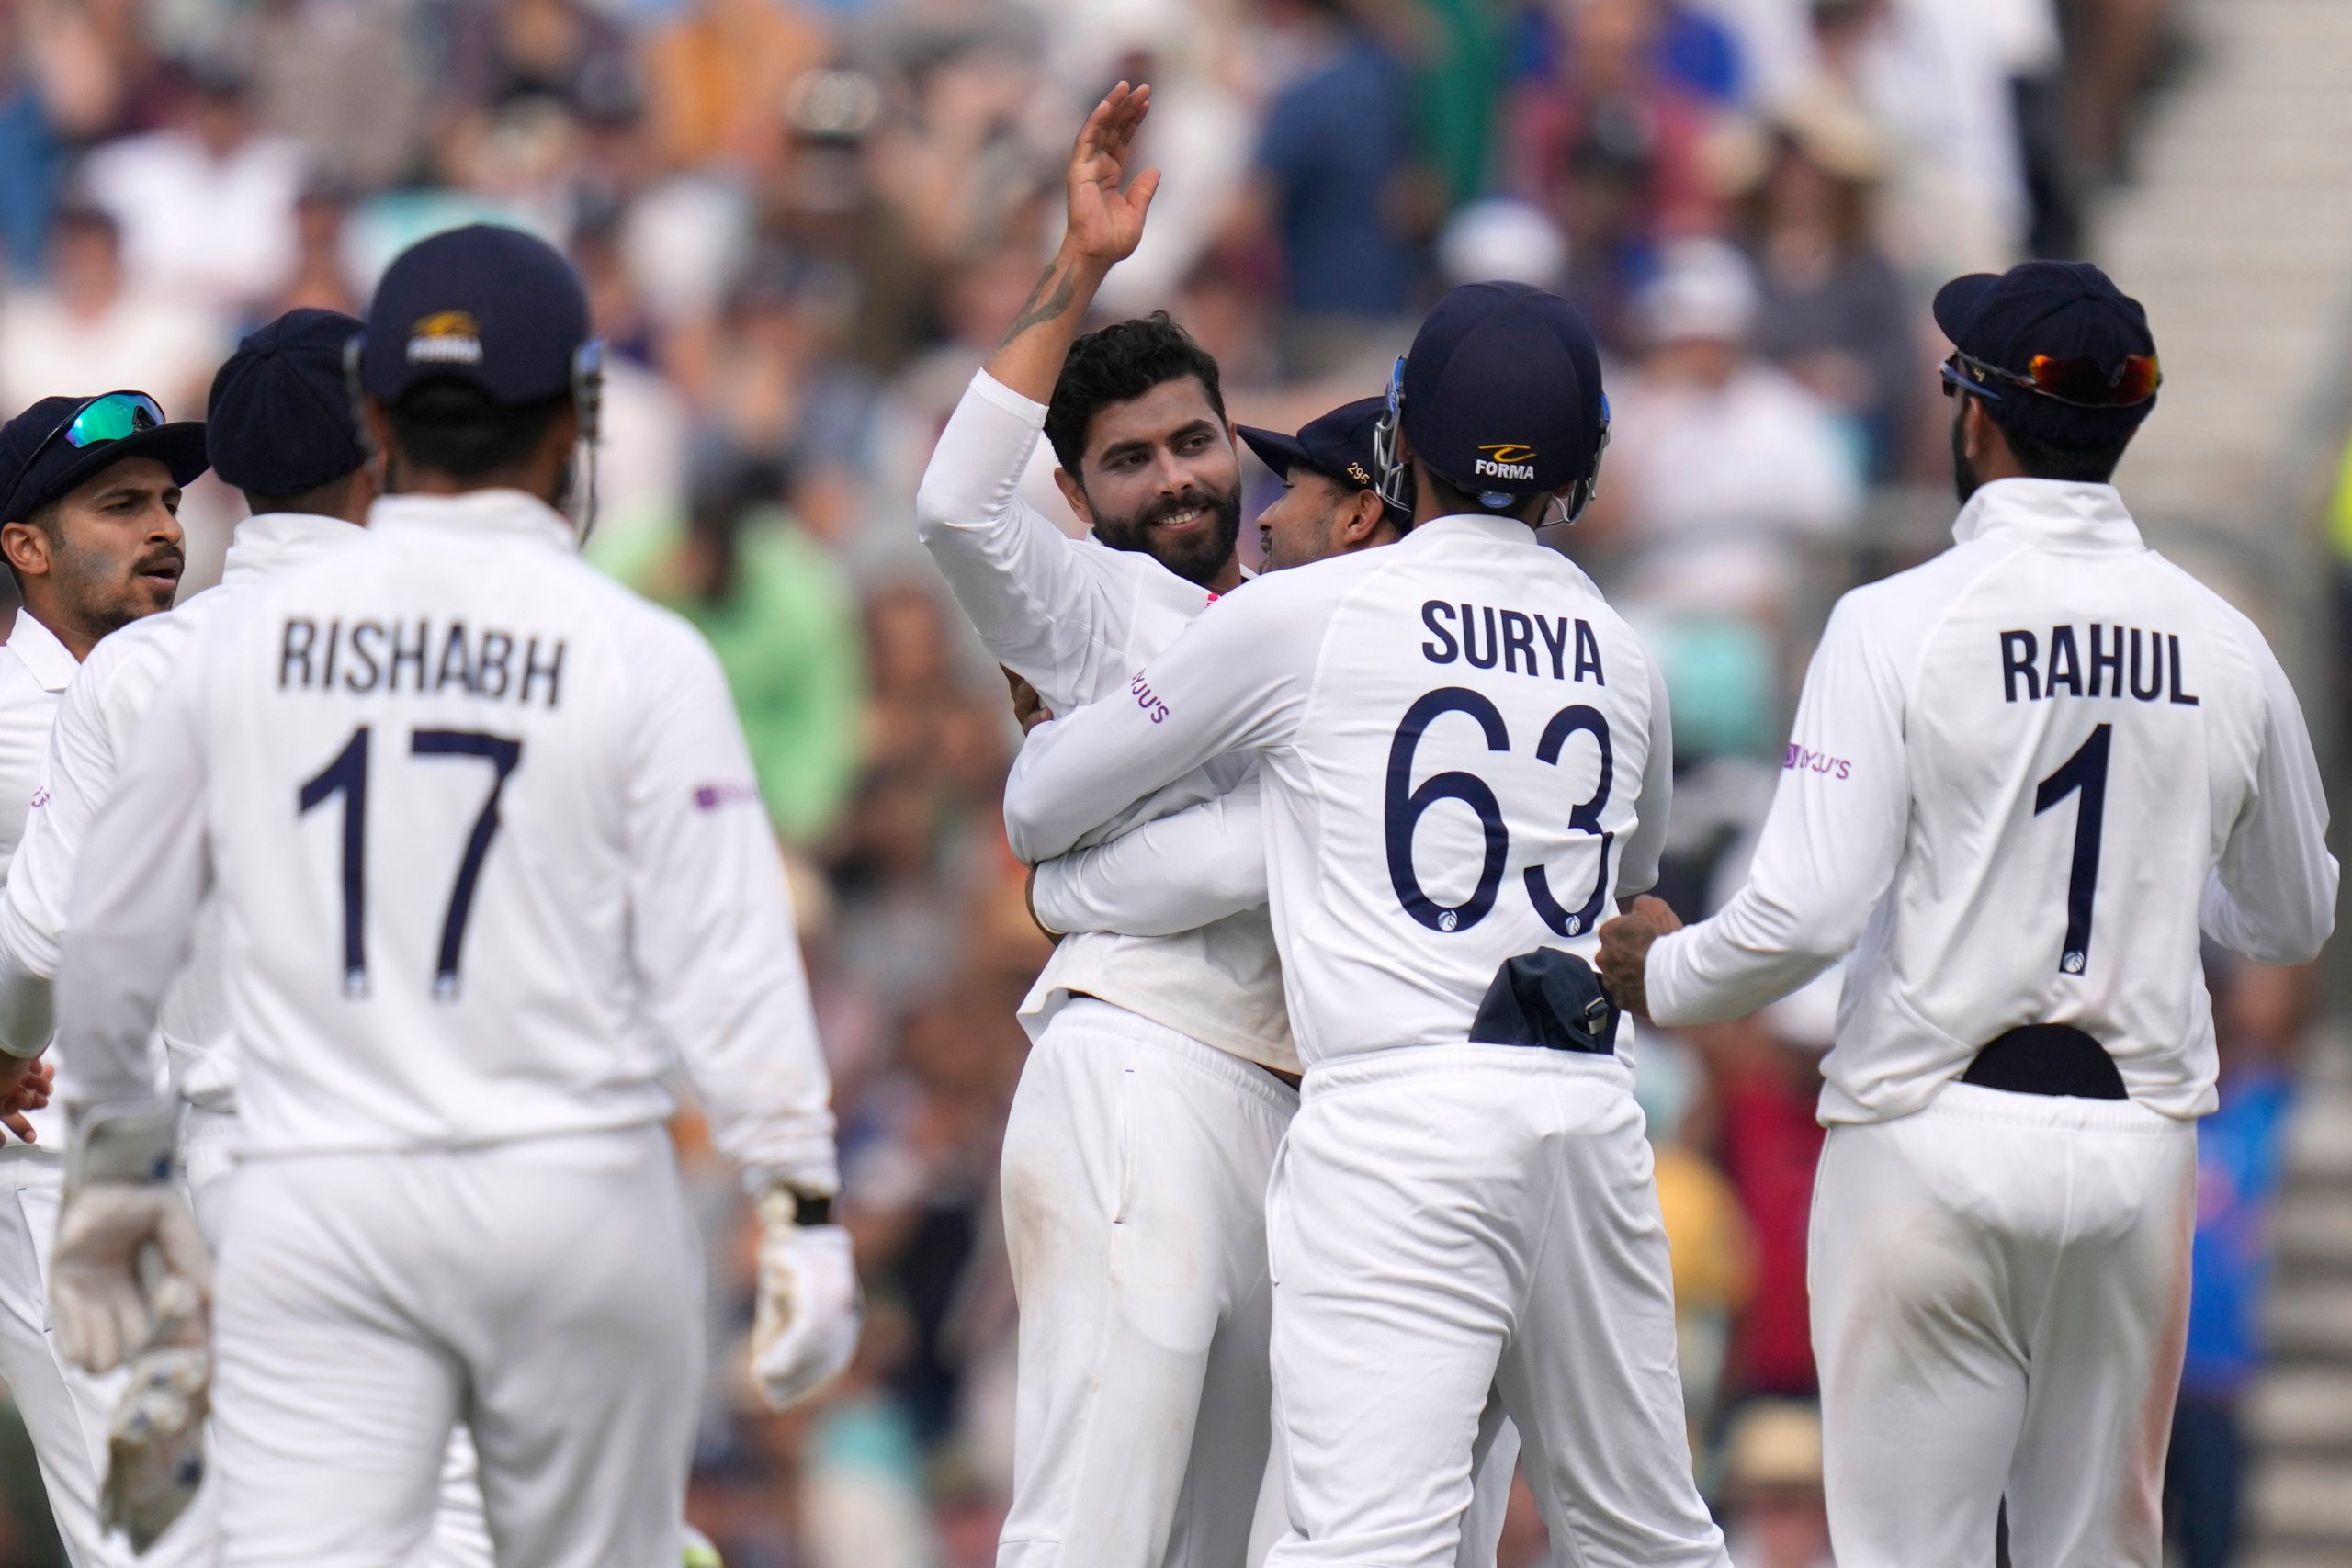 मेनचेस्टर टेस्ट का रास्ता साफ, सभी भारतीय खिलाड़ियों की कोरोना रिपोर्ट आई निगेटिव